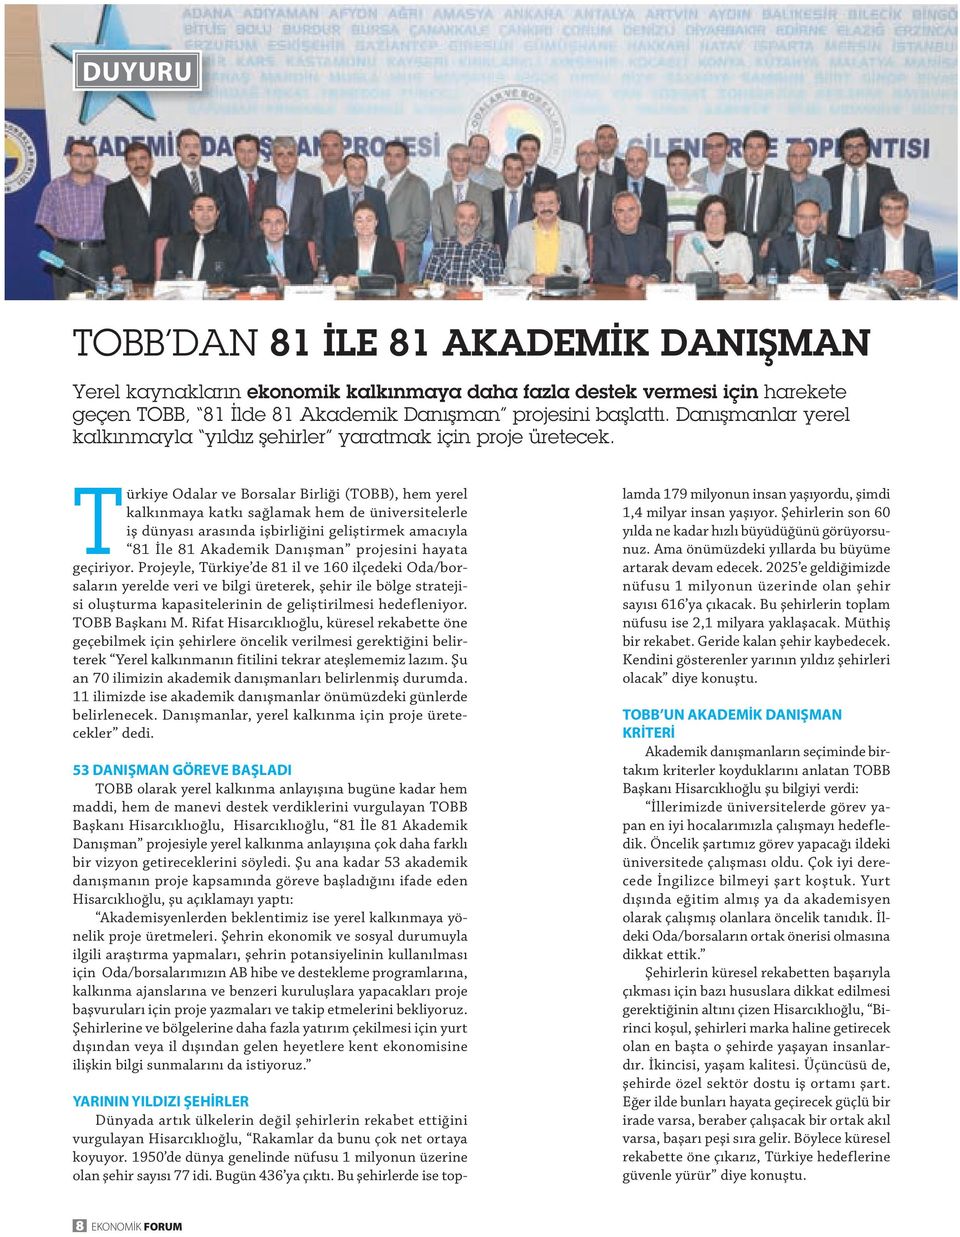 Türkiye Odalar ve Borsalar Birliği (TOBB), hem yerel kalkınmaya katkı sağlamak hem de üniversitelerle iş dünyası arasında işbirliğini geliştirmek amacıyla 81 İle 81 Akademik Danışman projesini hayata